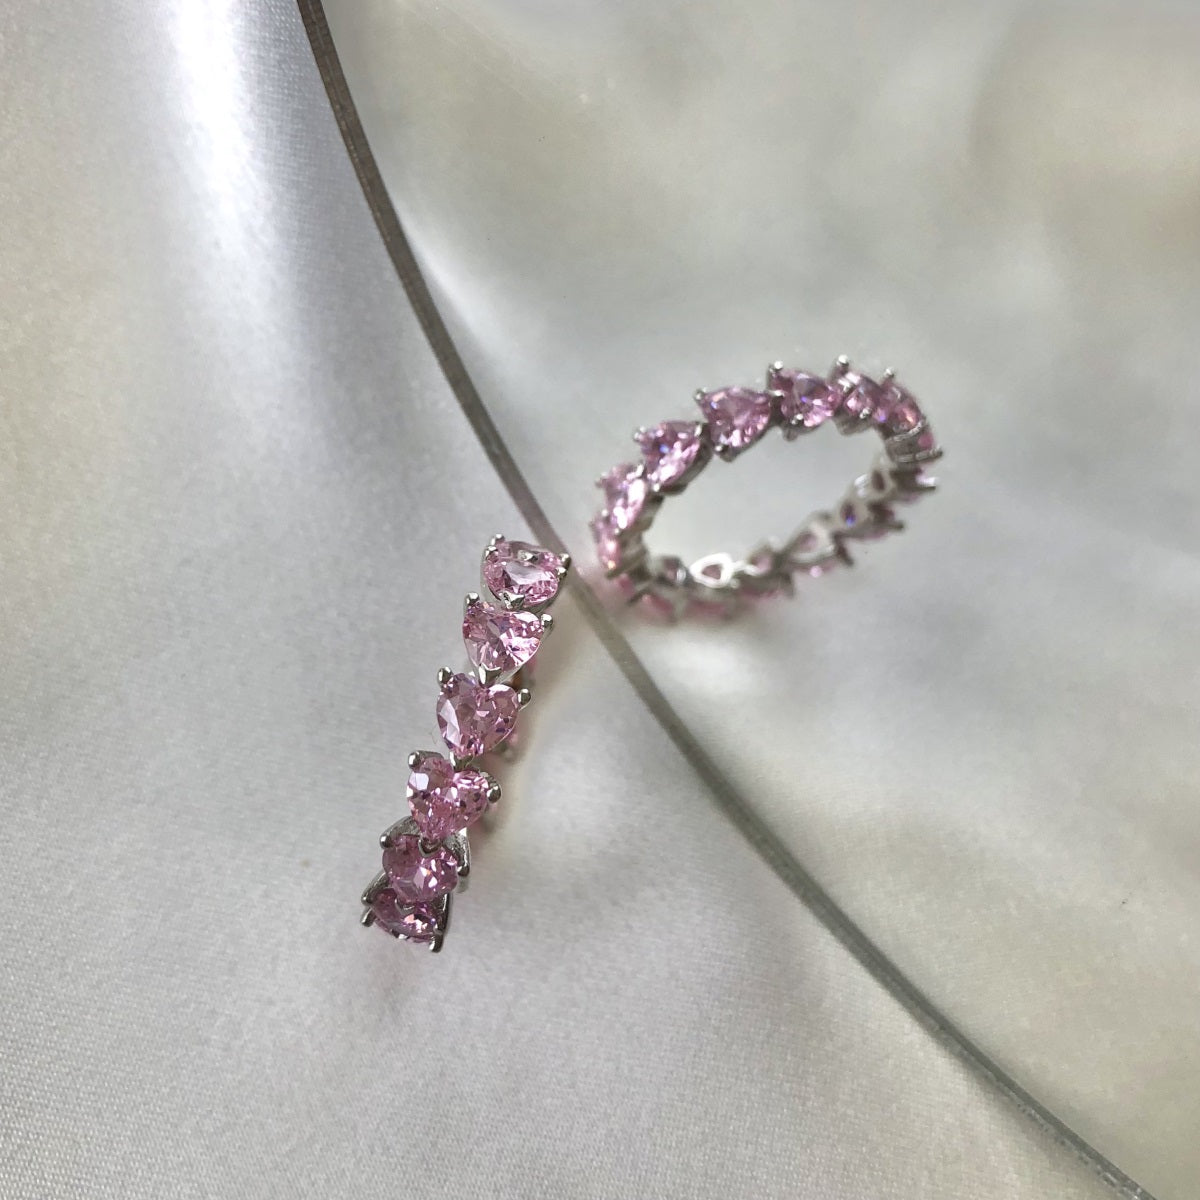 Silber Ring mit pinke Diamanten bestückt - Arabisco